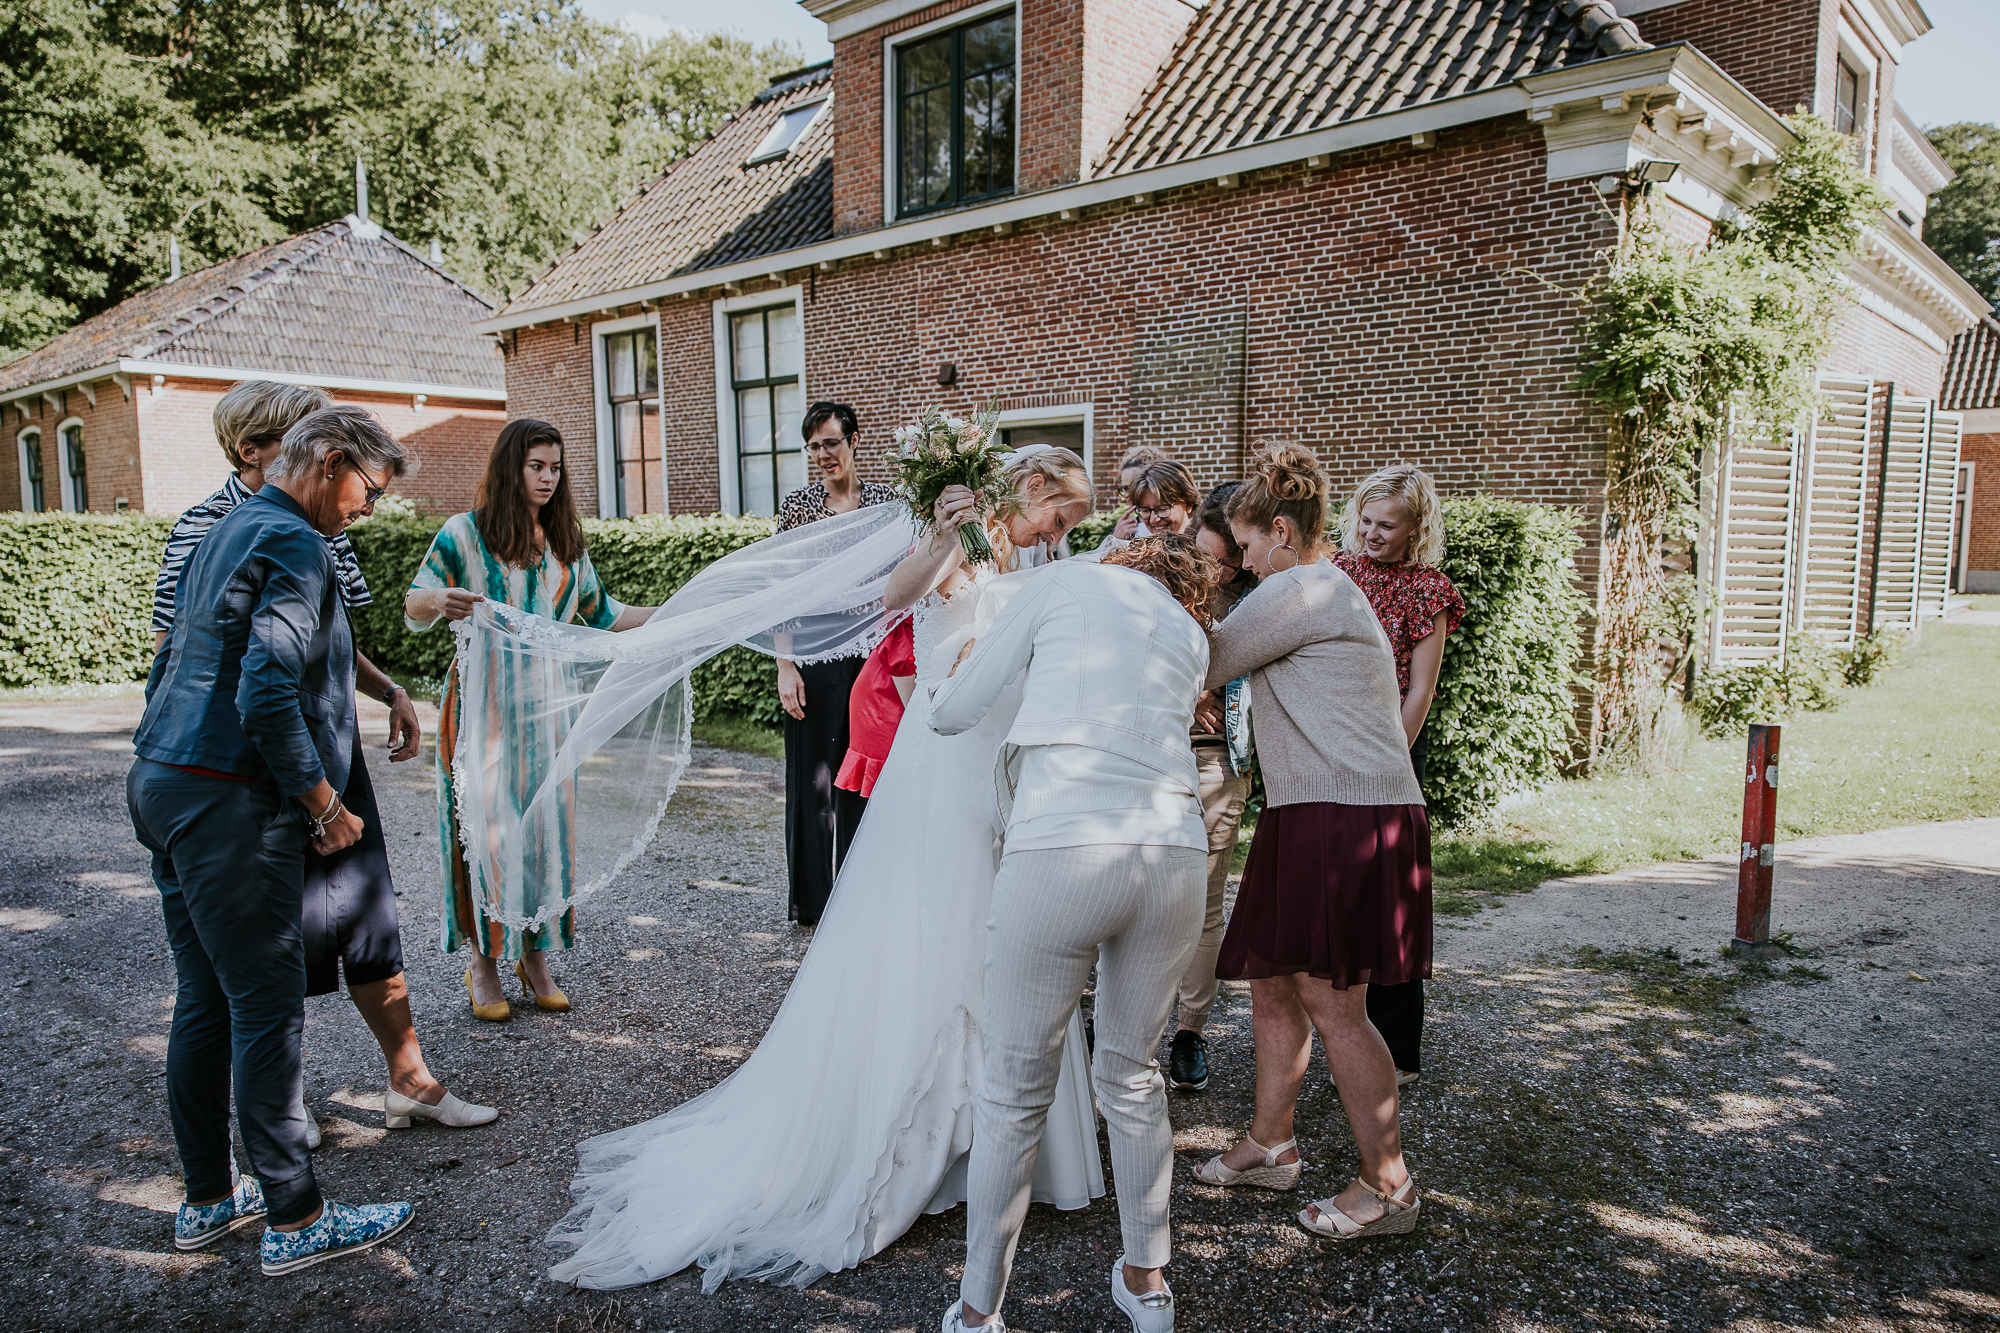 Vriendinnen bewonderen de bruidsjurk,  van  Bruid & Bubbels. Bruidsfotografie door bruidsfotograaf Nickie Fotografie uit Friesland.